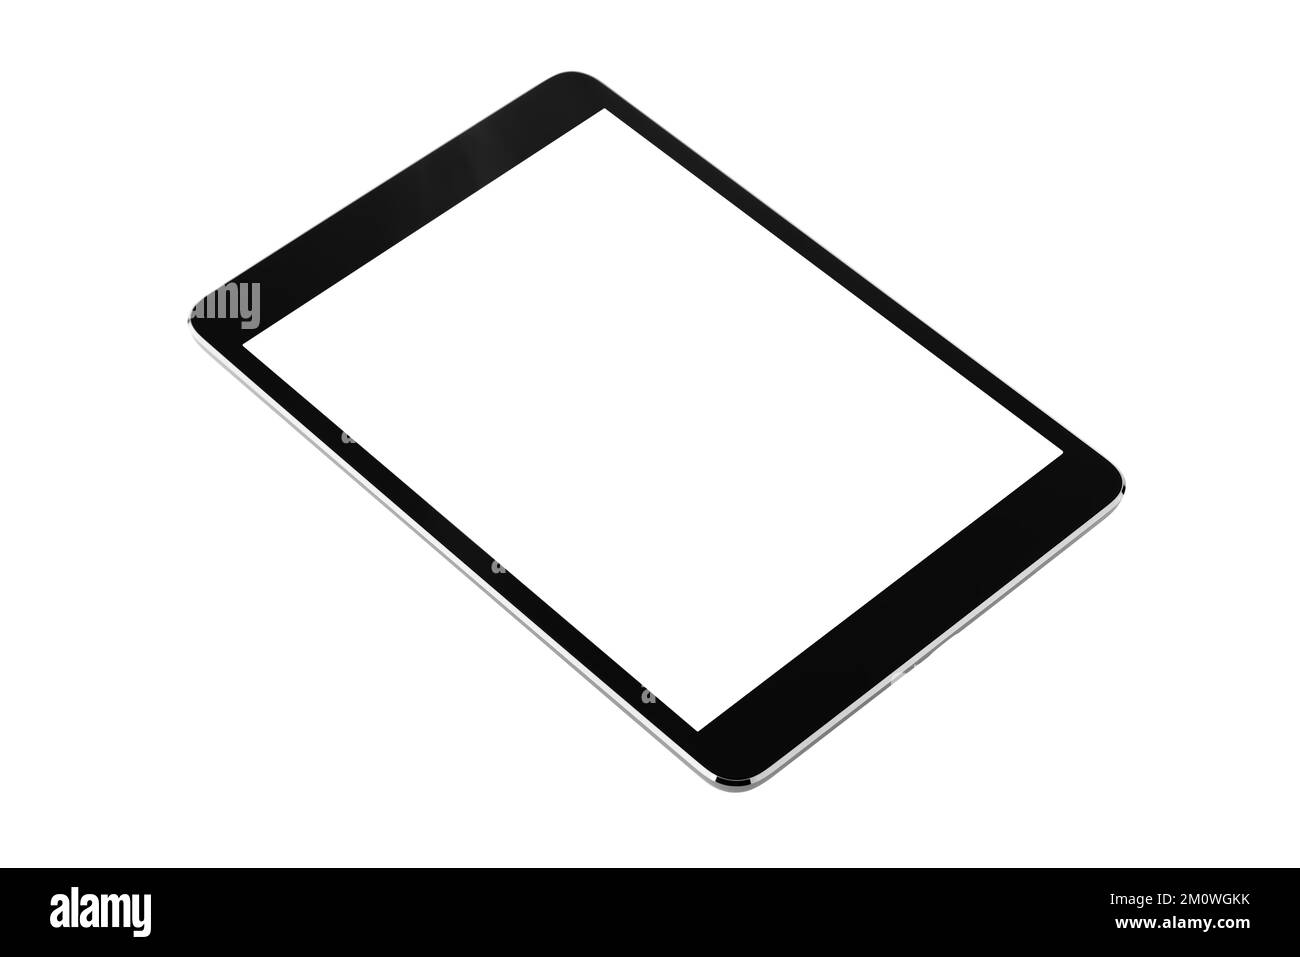 Digital Tablet isoliert auf weißem Hintergrund mit drei Vierteln Mockup, Neues, rahmenloses Tablet ohne Rahmen in Schwarz mit weißem Bildschirm Stockfoto